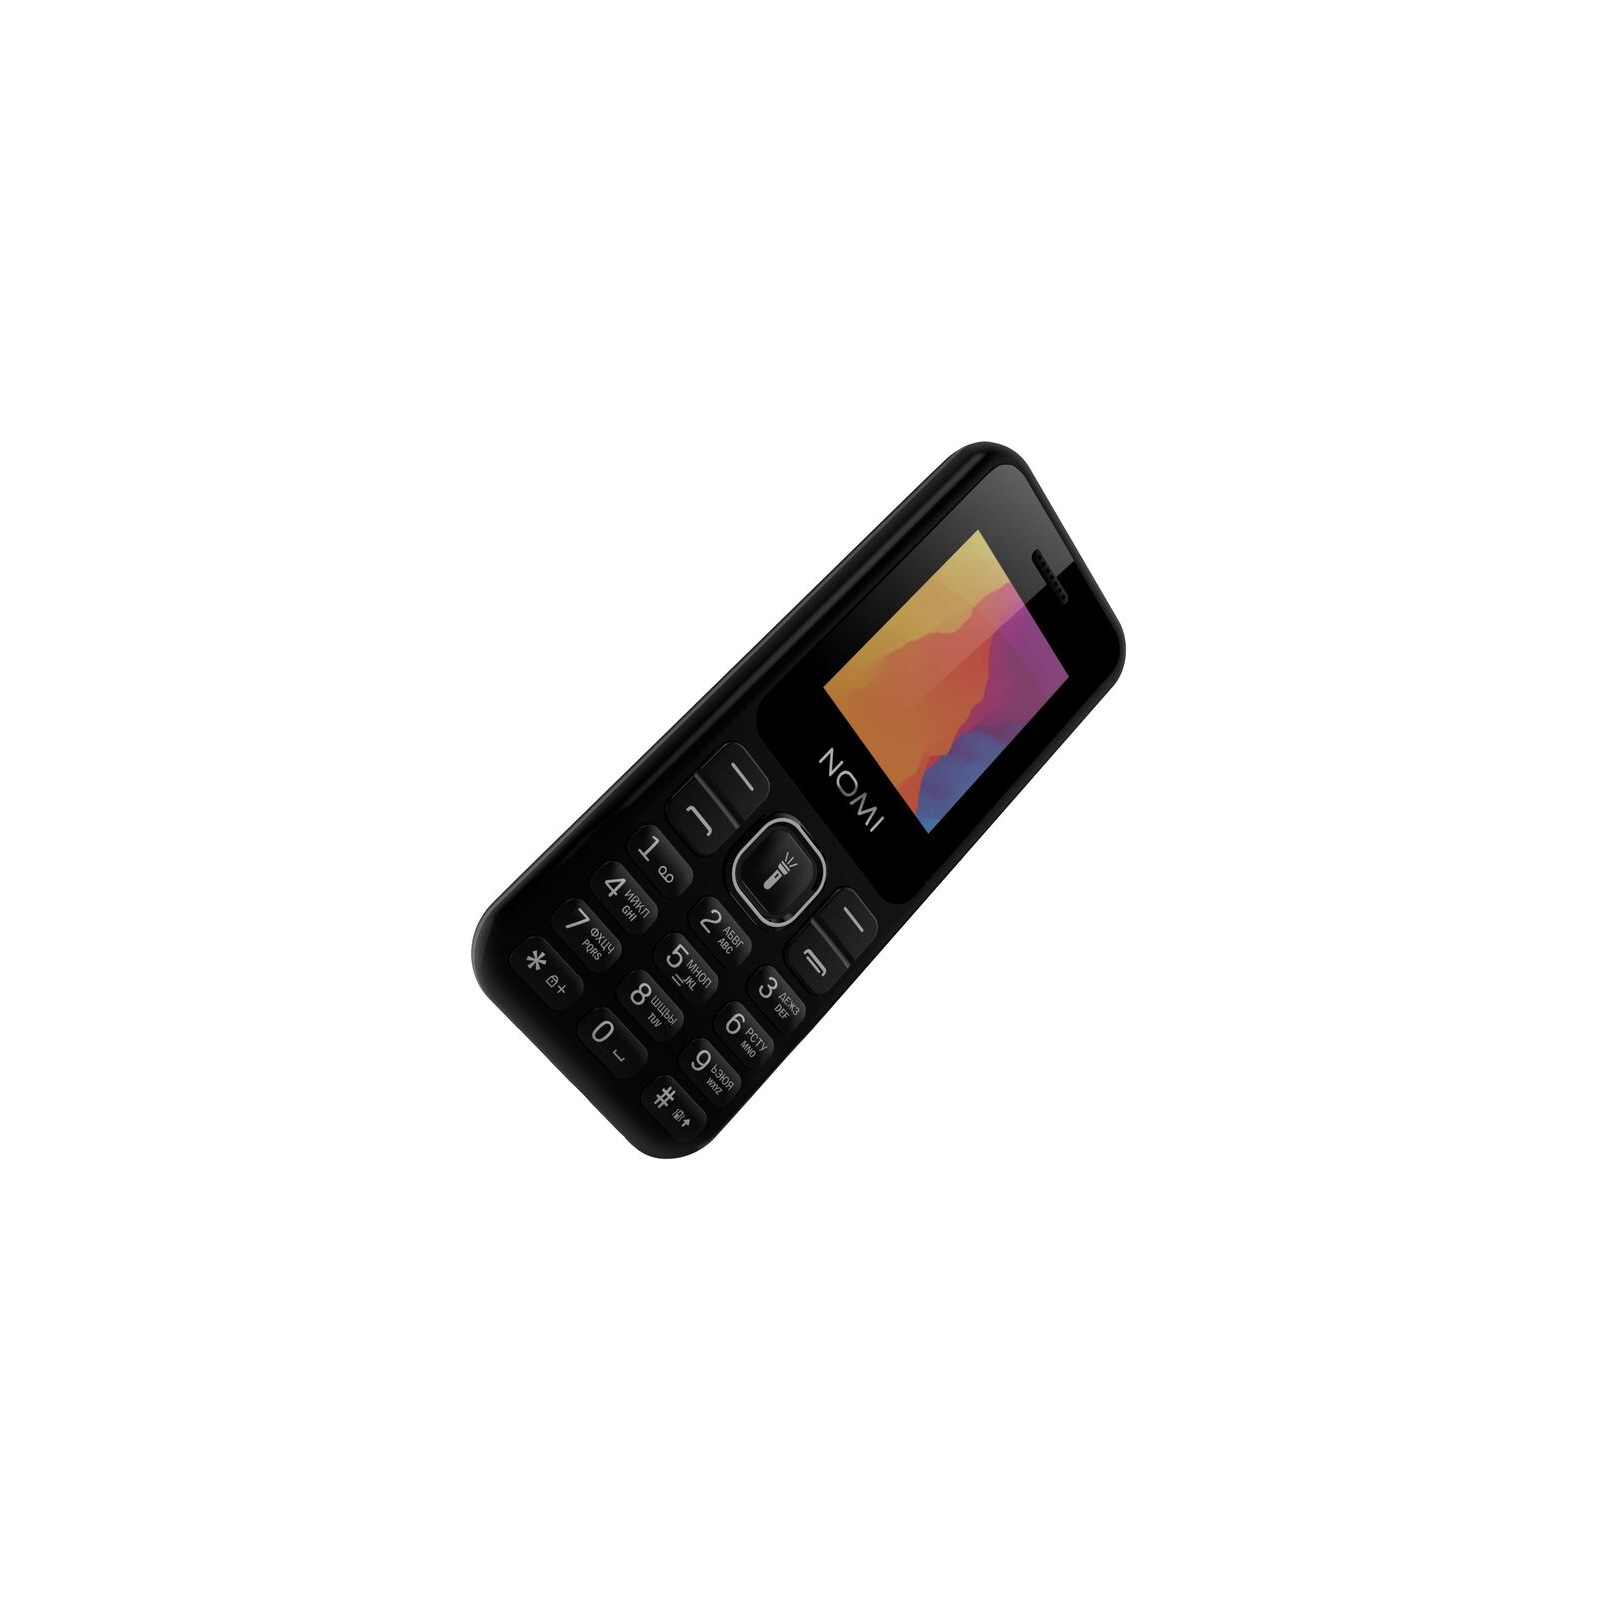 Мобильный телефон Nomi i1880 Red изображение 4